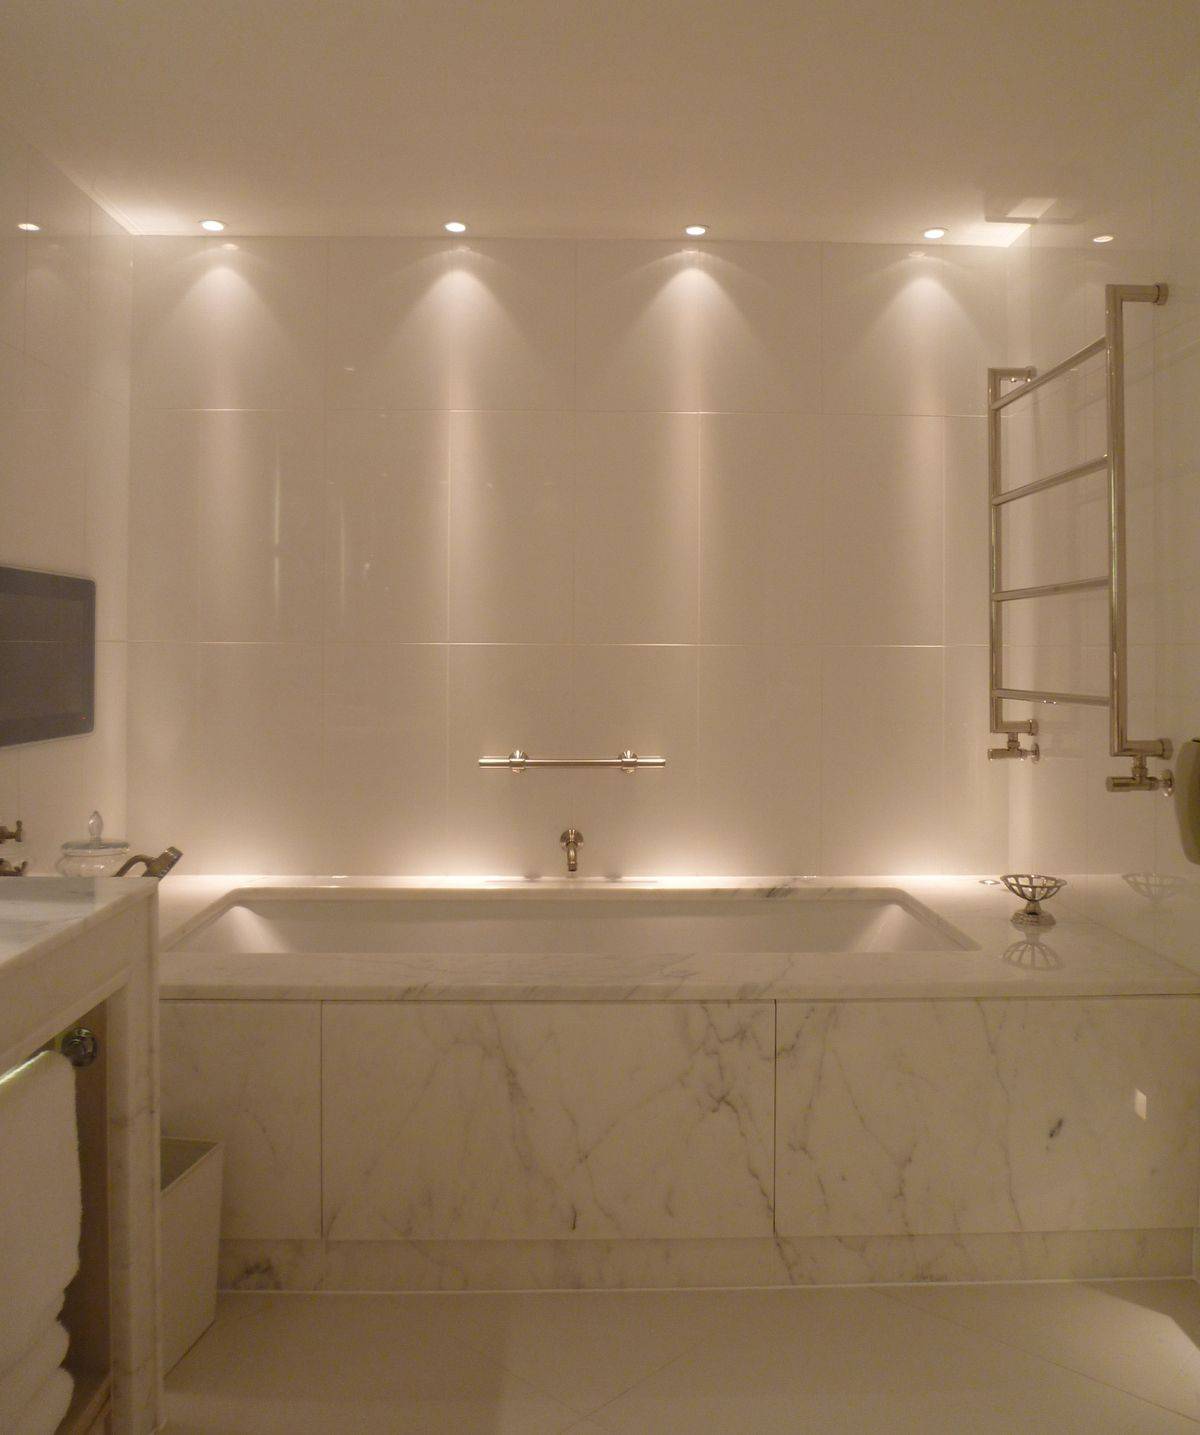 Споты для ванны. Освещение в ванной. Светильники для ванной комнаты. Точечное освещение в ванной. Потолочное освещение в ванной комнате.